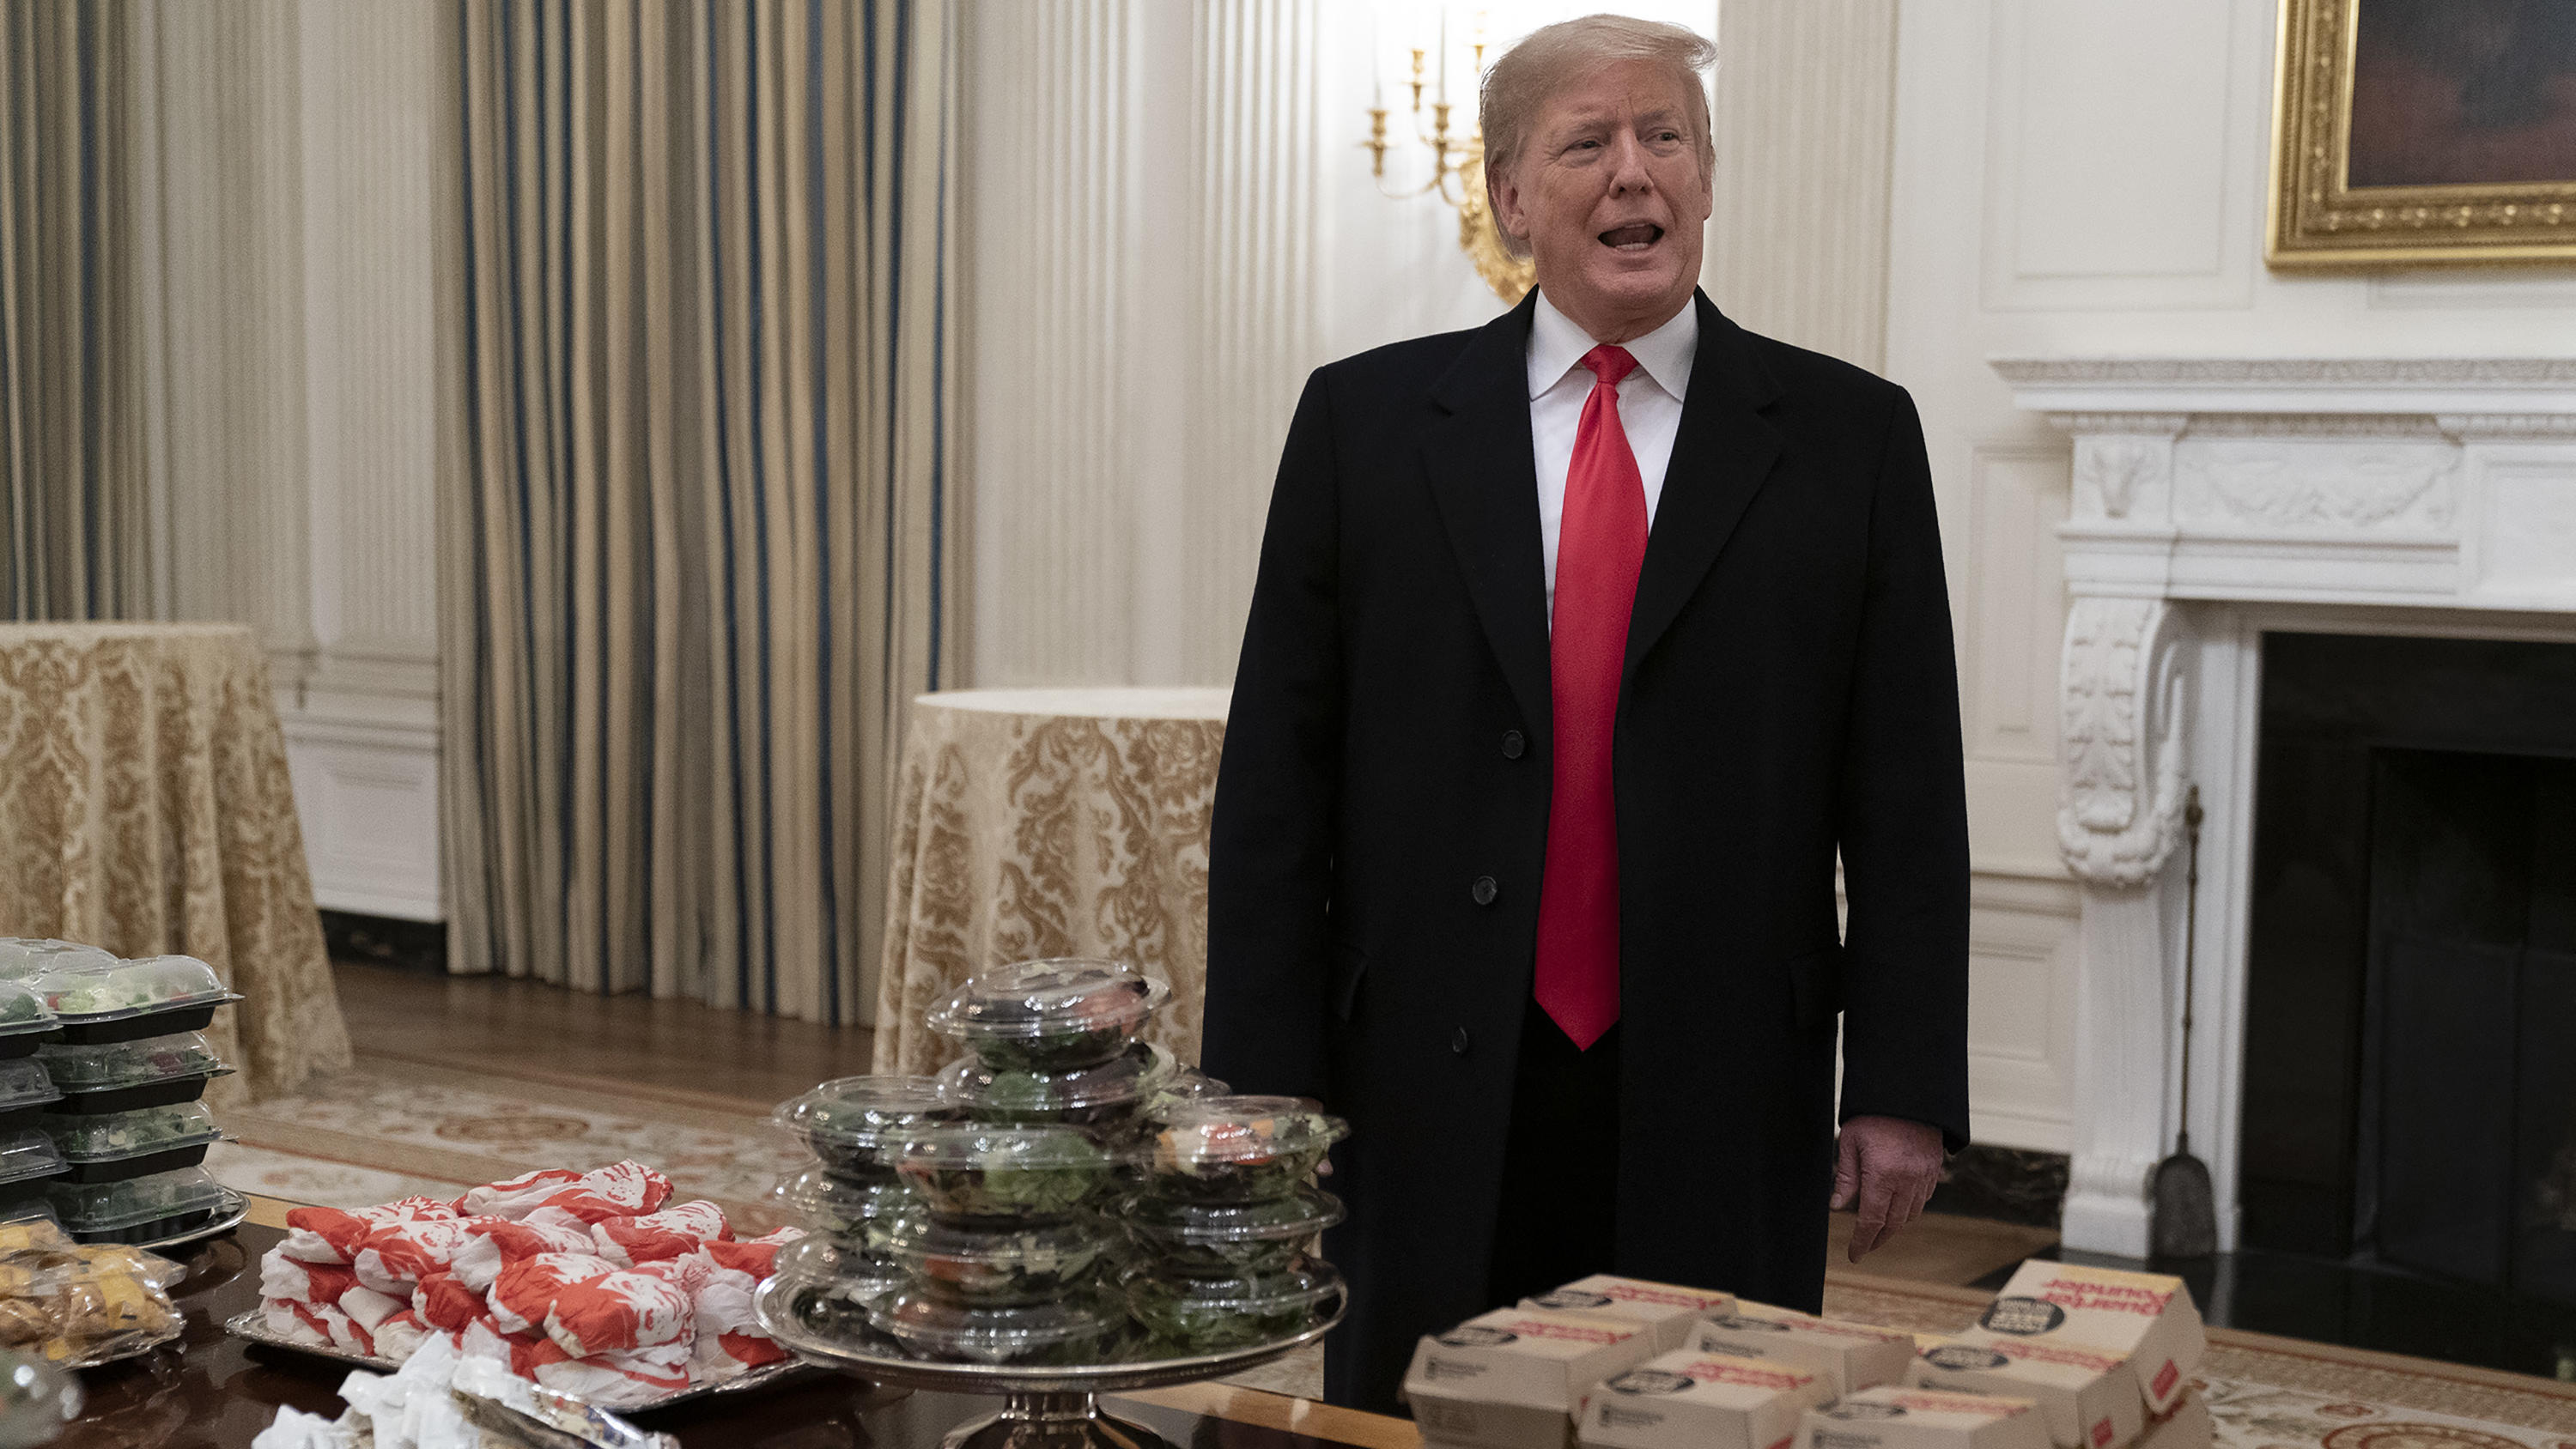 Donald Trump ist ein Fan von Fast FooDonald Trump servierte eine Football-Mannschaft diesen Haufen Fast Food.